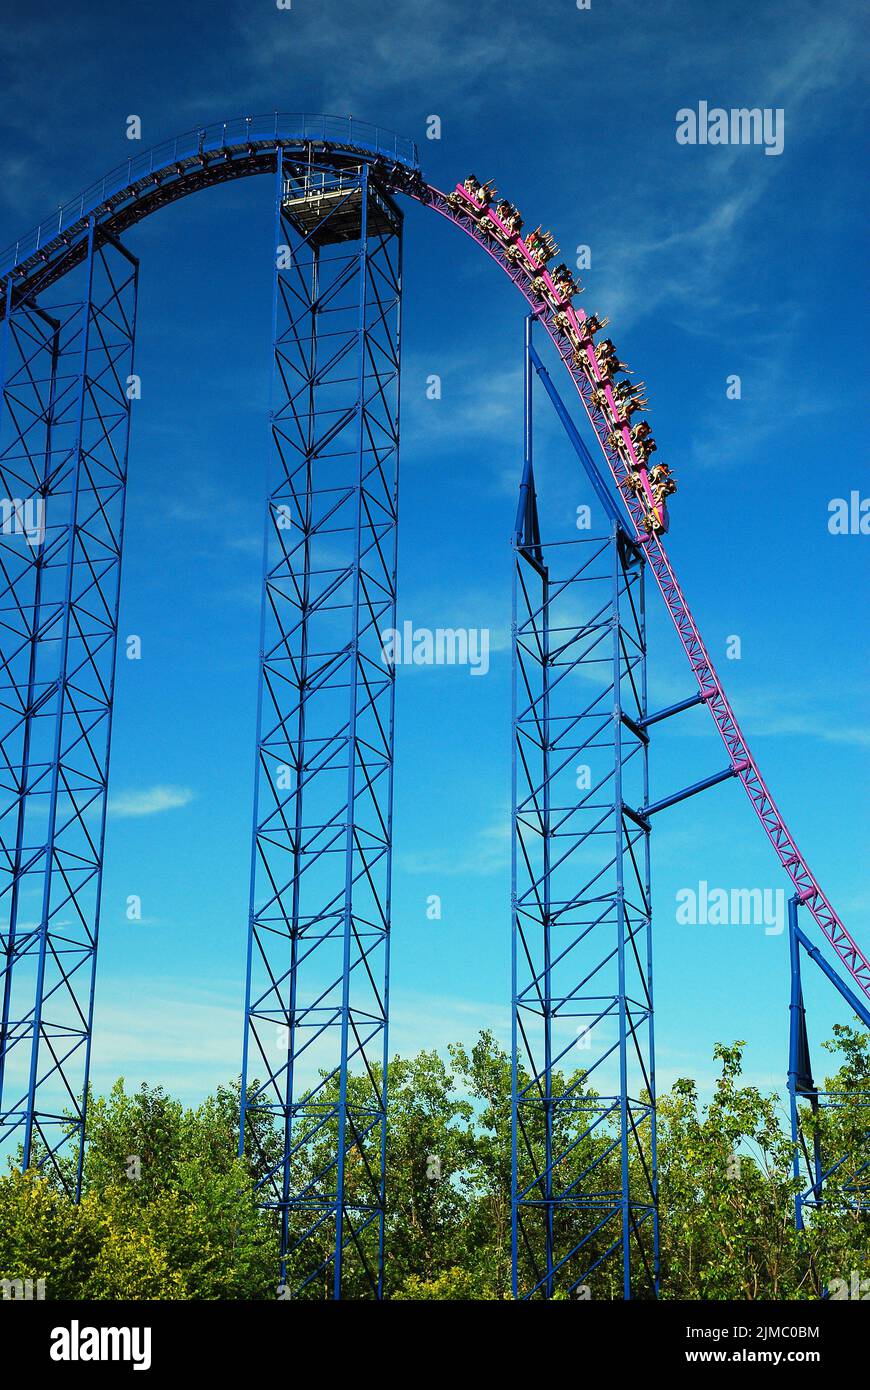 Los buscadores de emociones se dirigen al descenso de Superman the Ride, a menudo considerada una de las mejores montañas rusas del mundo, en Six Flags New England, Foto de stock